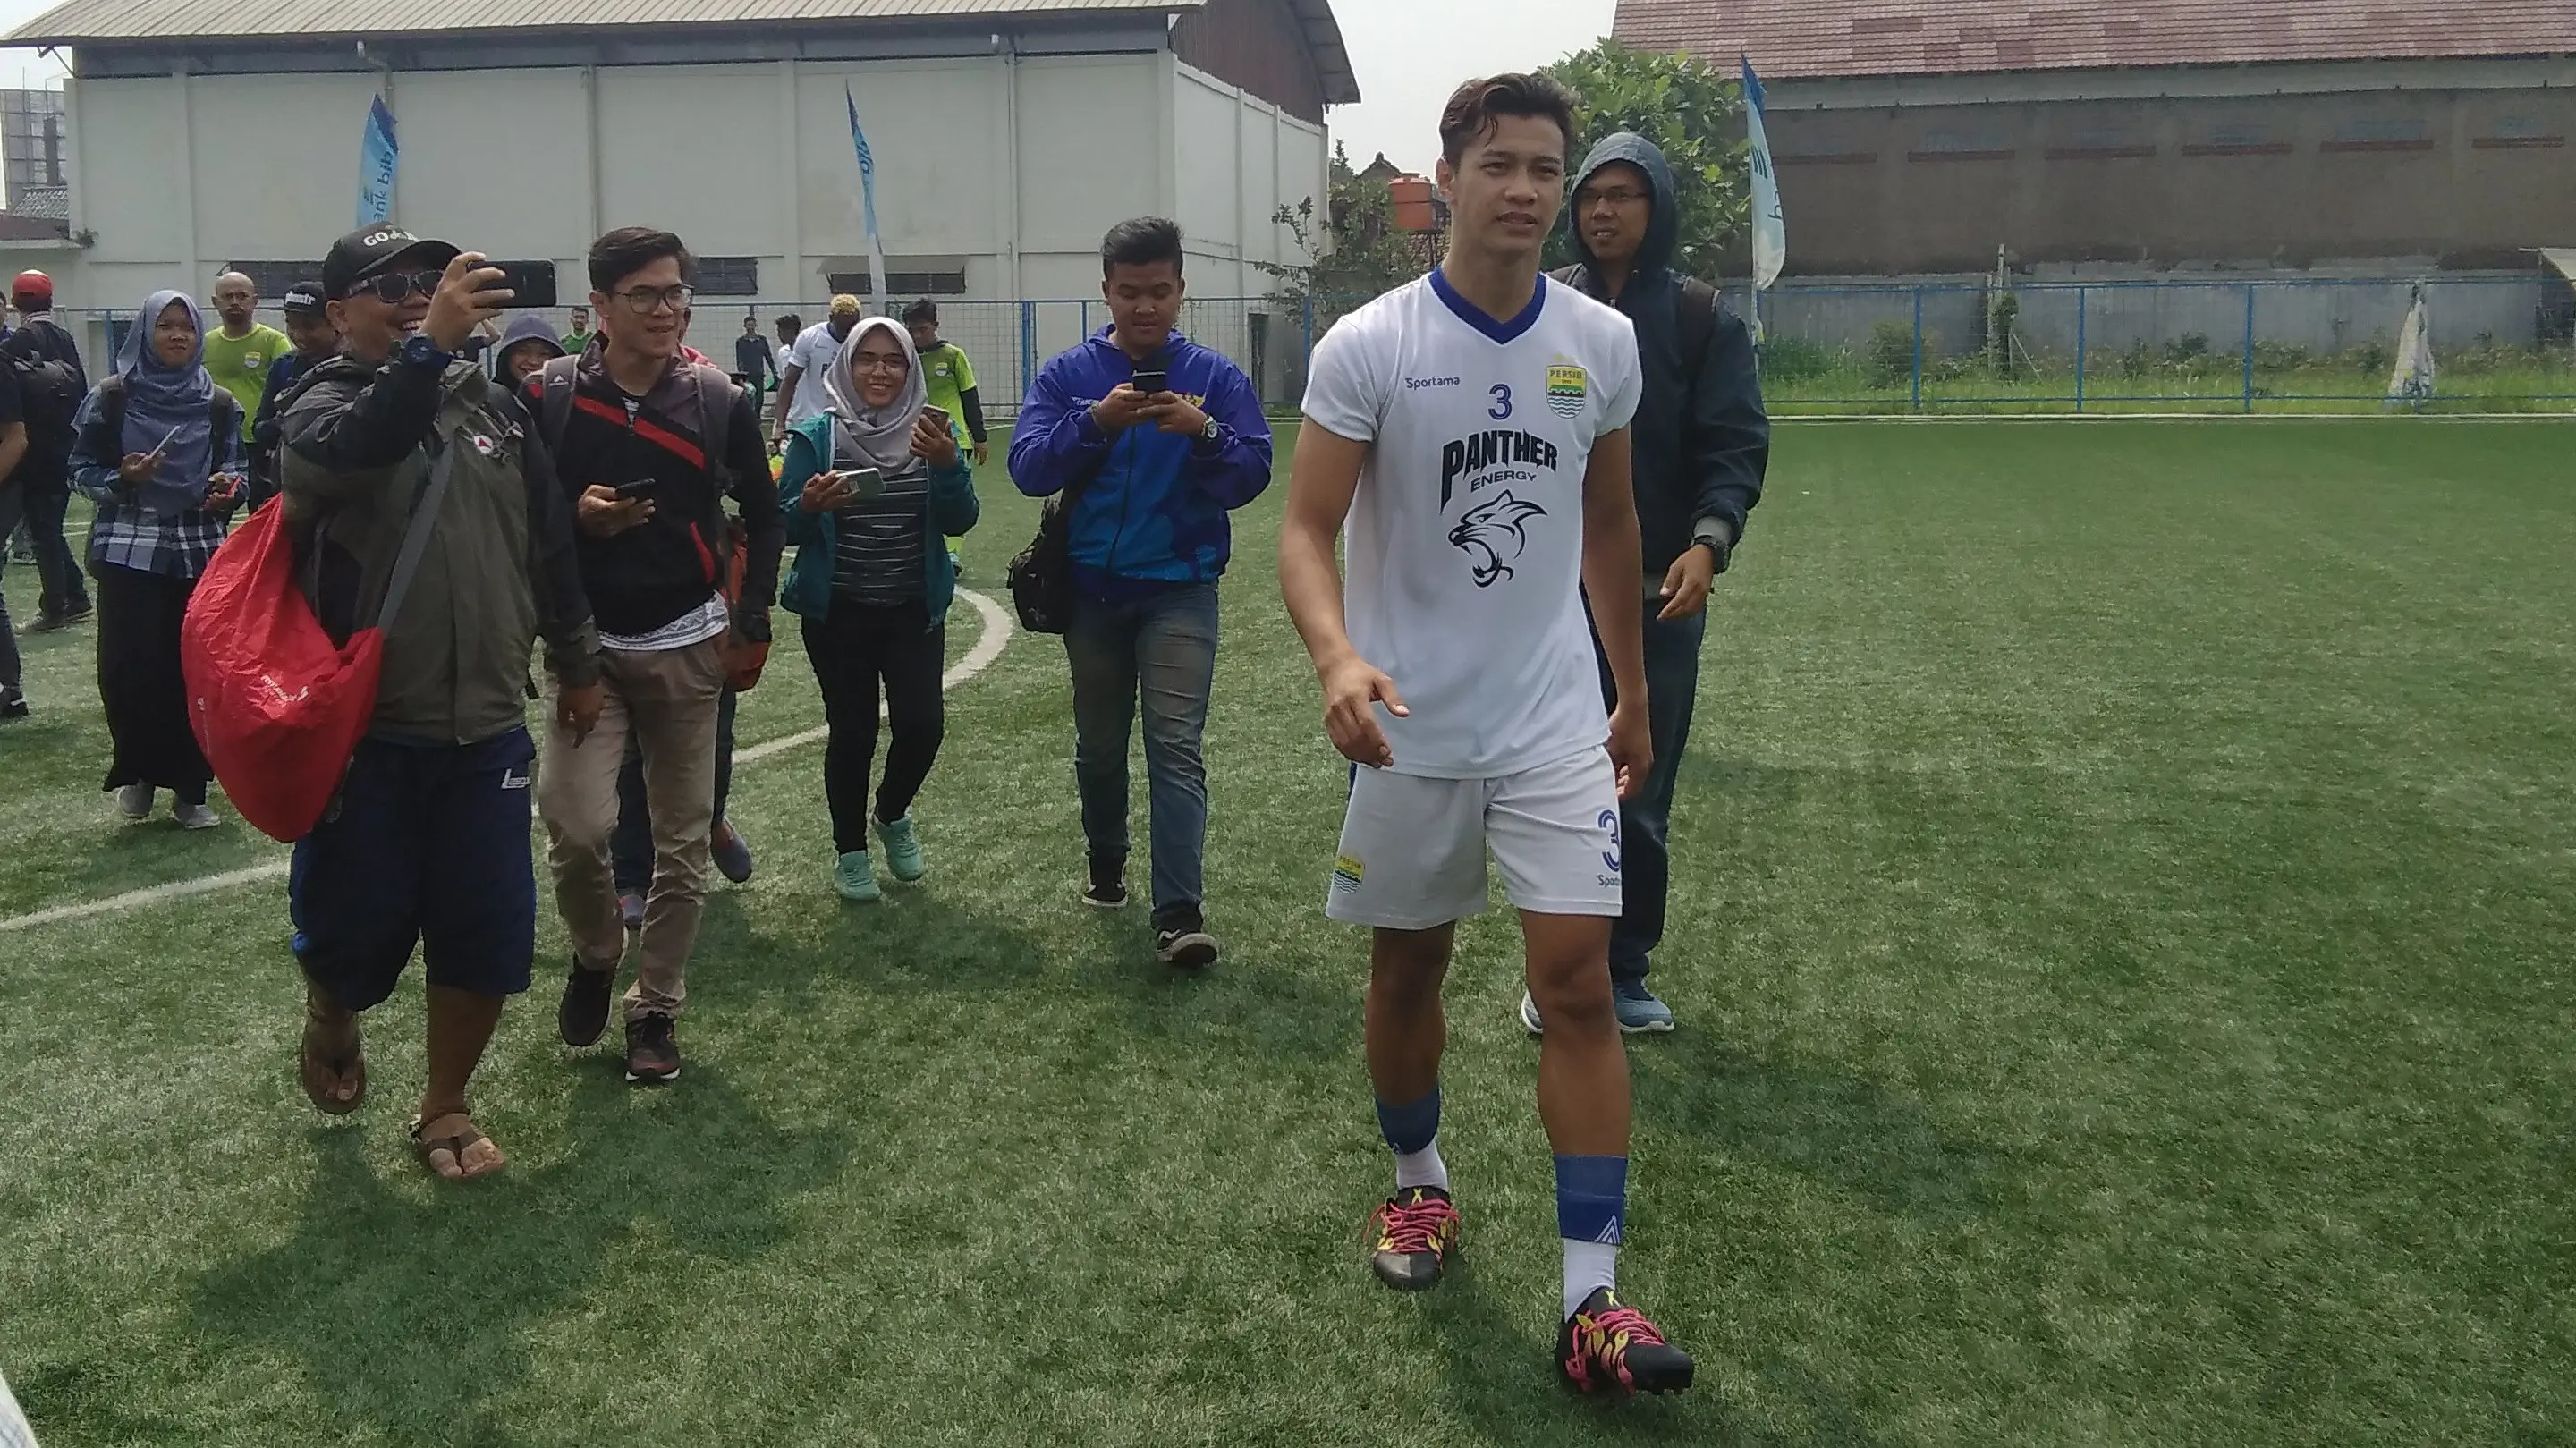 Mochamad Al Amin Syukur Fisabillah yang berposisi bek, mengikuti trial bersama Persib Bandung. (Bola.com / Muhammad Ginanjar)